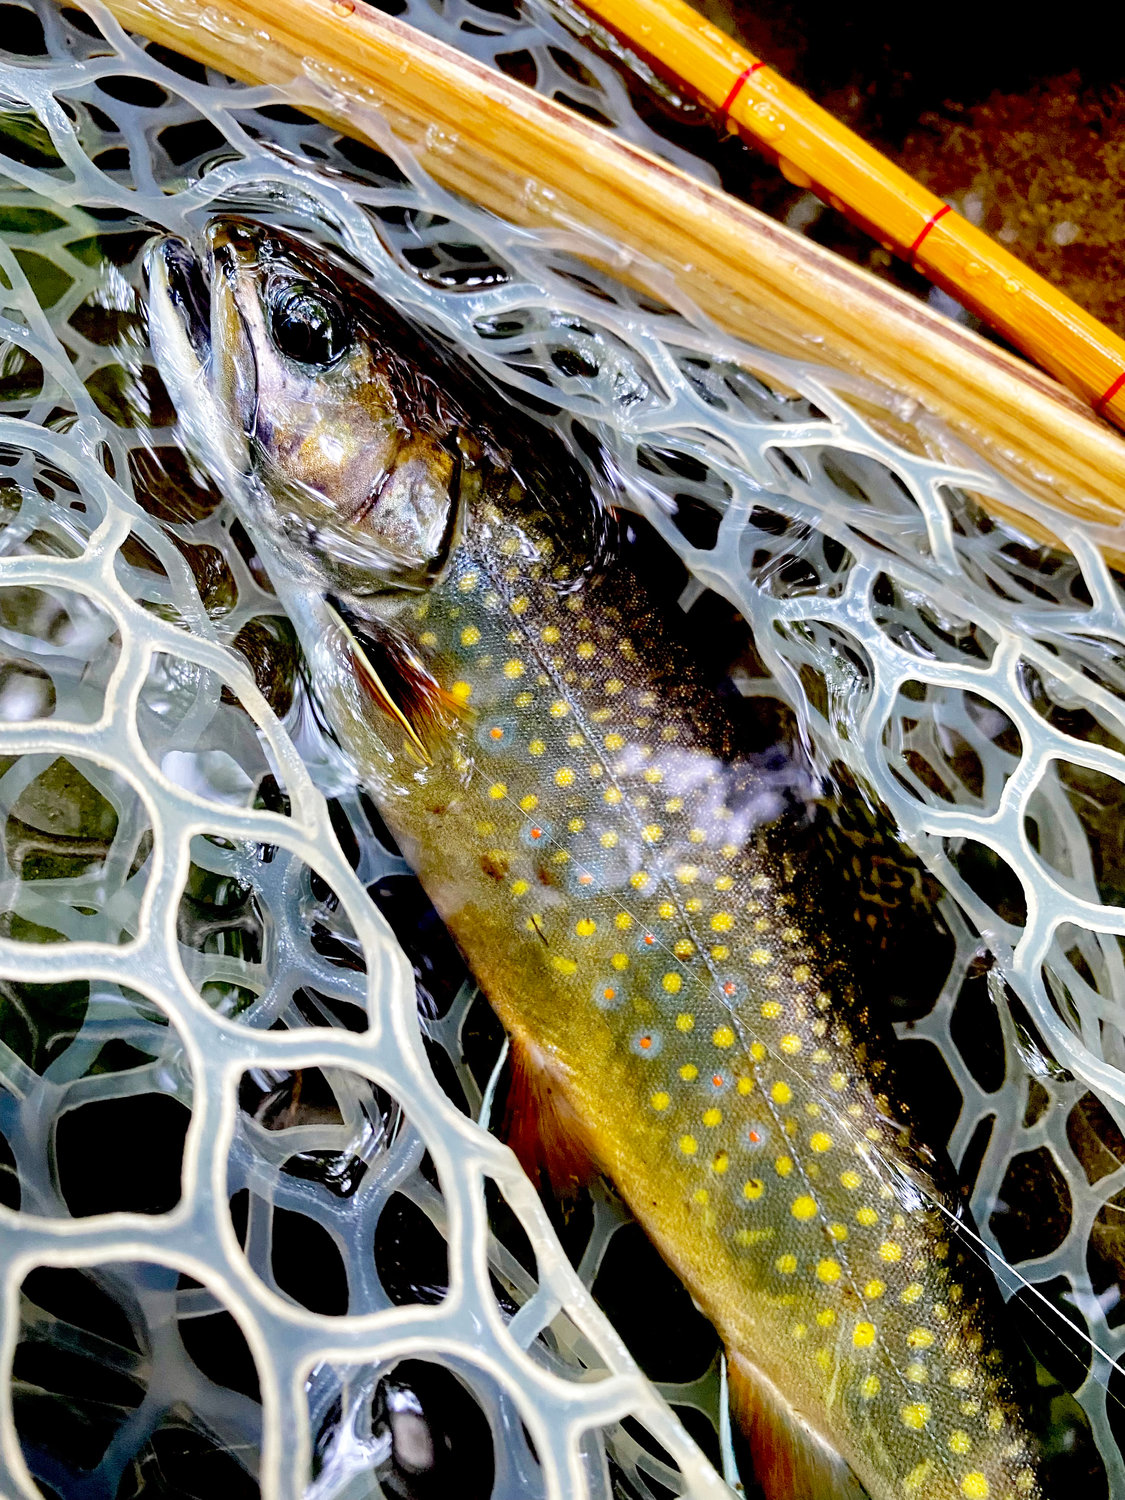 Beautiful wild brook trout caught by “Catskill John” Bonasera.